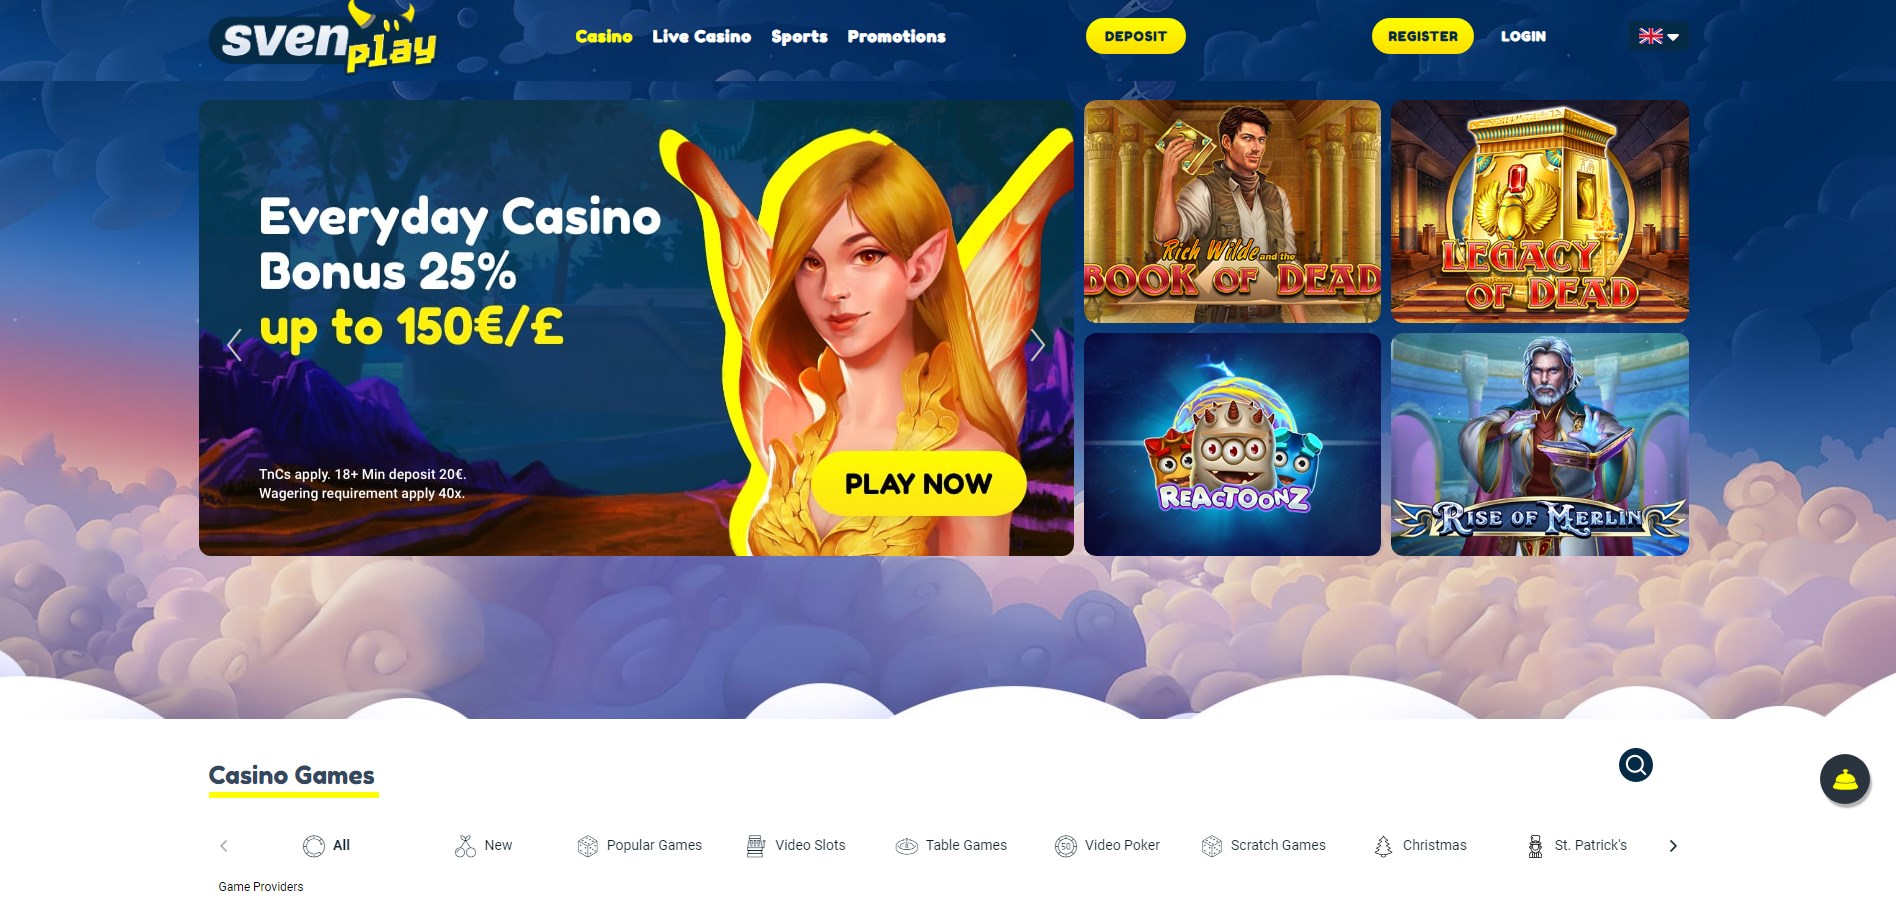 SvenPlay Casino Review